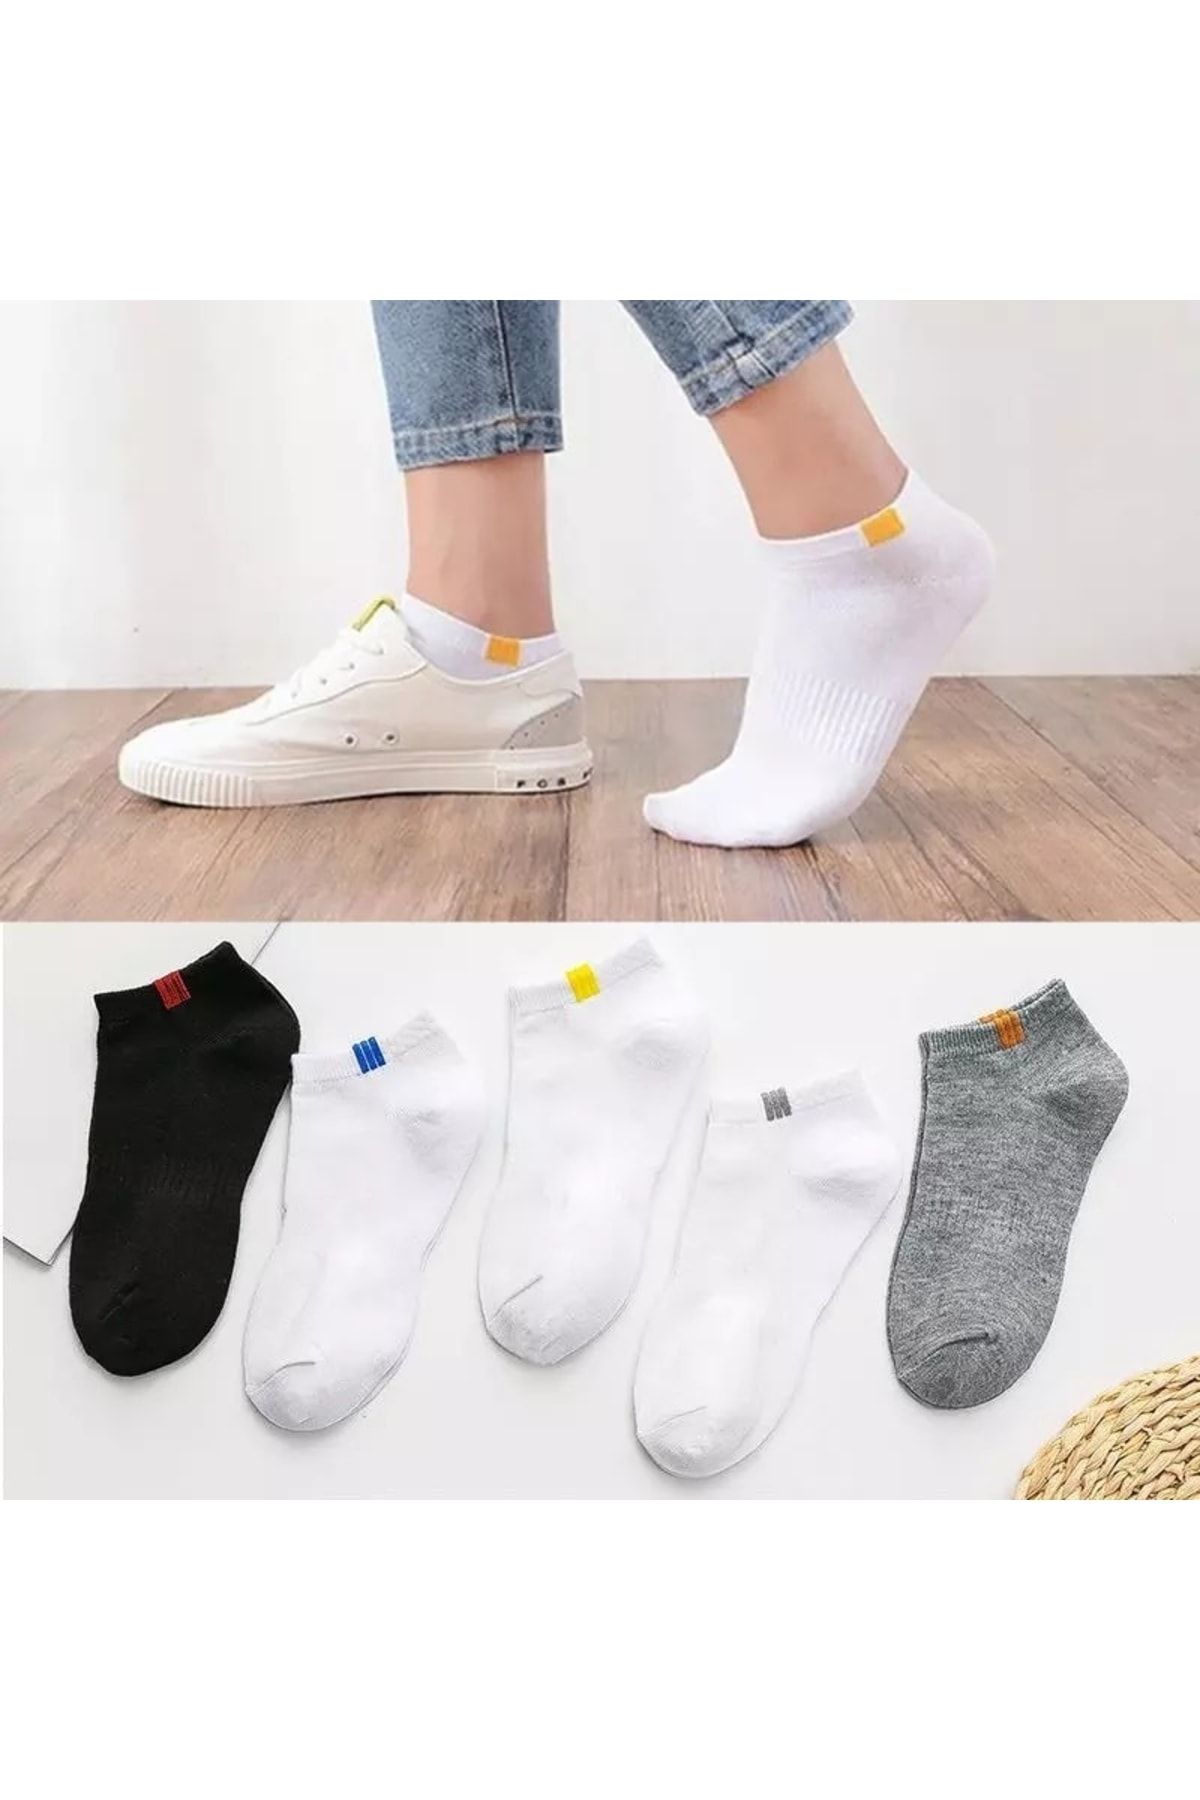 Atacık Çorap 5 Çift Unisex Beyaz Renkli Taban Altı Lastikli Yıkamalı Rahat Bilek Patik Çorap